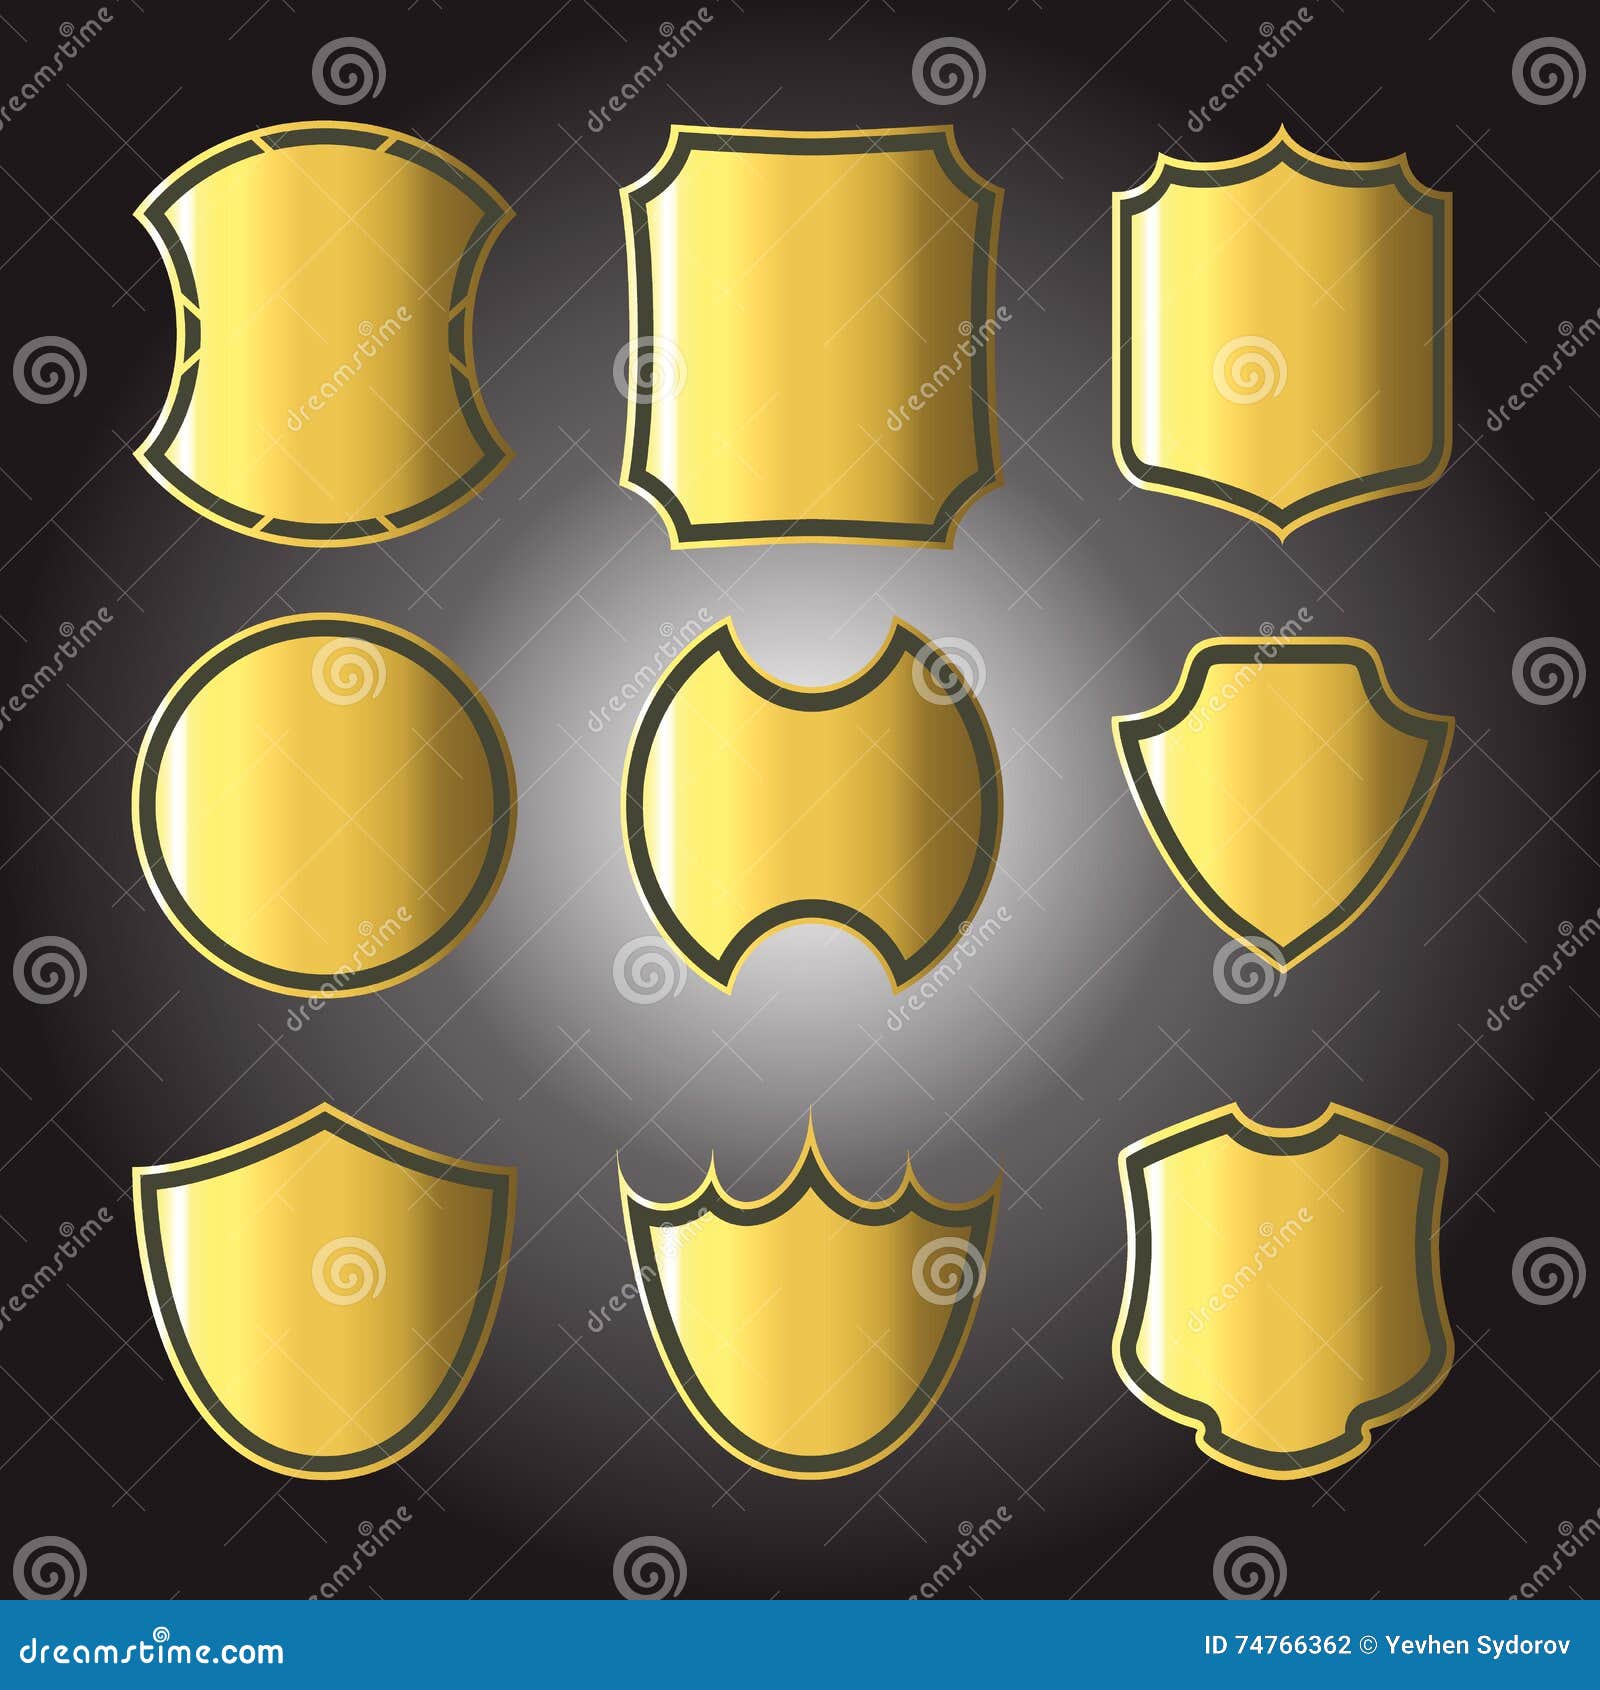 Σύνολο διαφορετικών χρυσών διακριτικών ασπίδων. Διανυσματικό σύνολο απεικόνισης διαφορετικών χρυσών διακριτικών ασπίδων